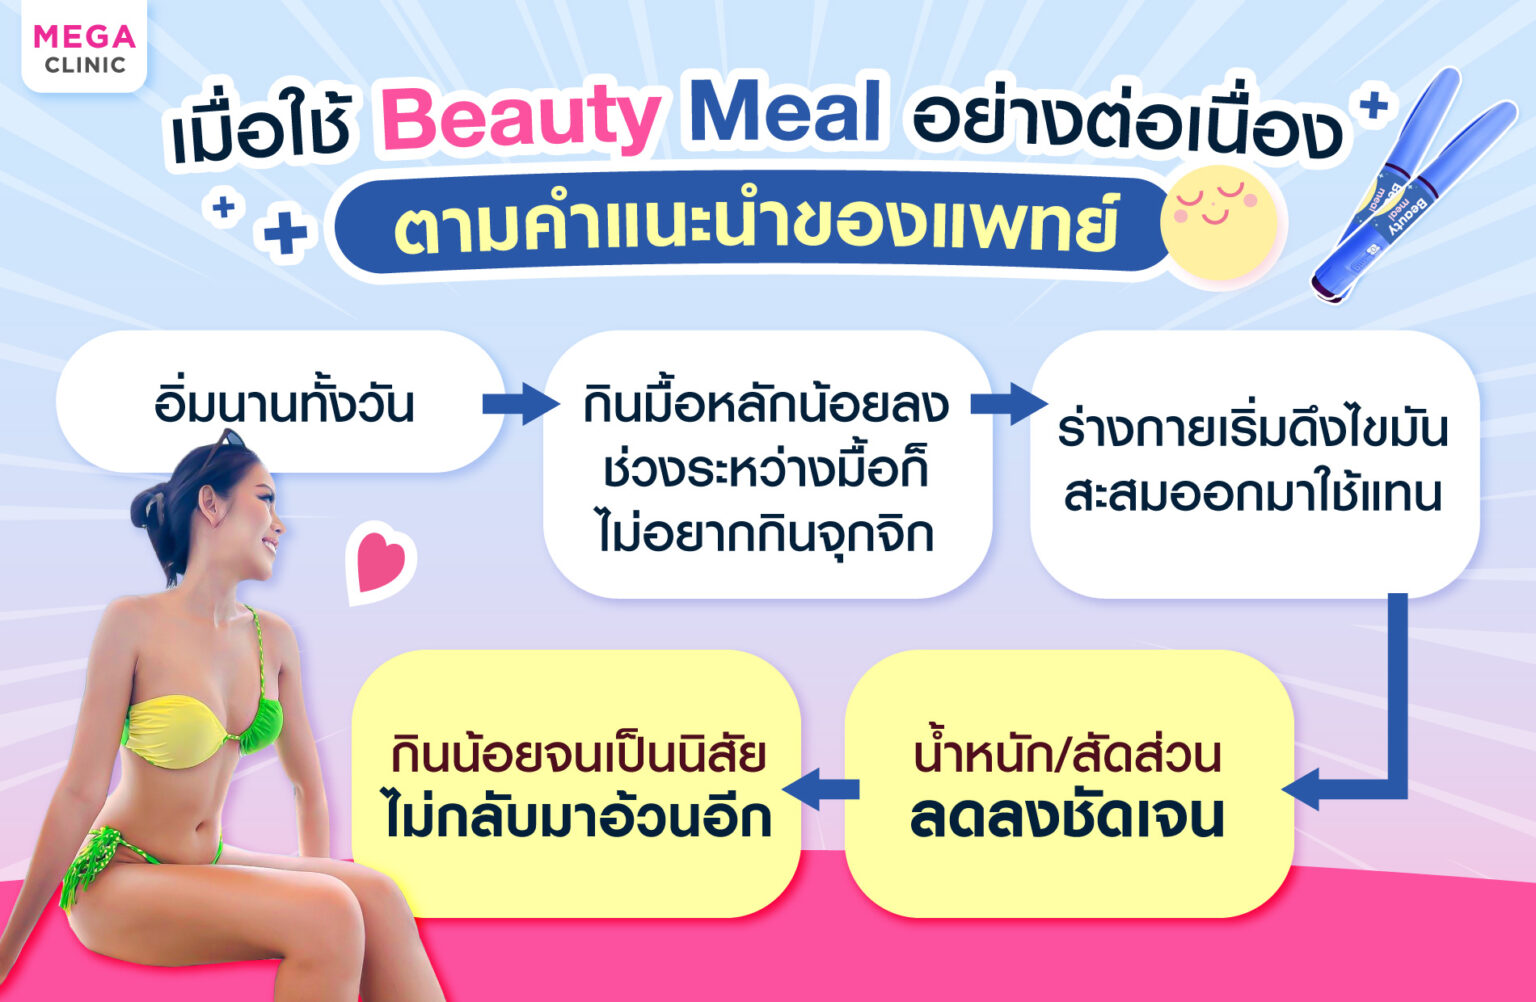 ข้อดีของการใช้ BeautyMeal ตามแพทย์แนะนำ